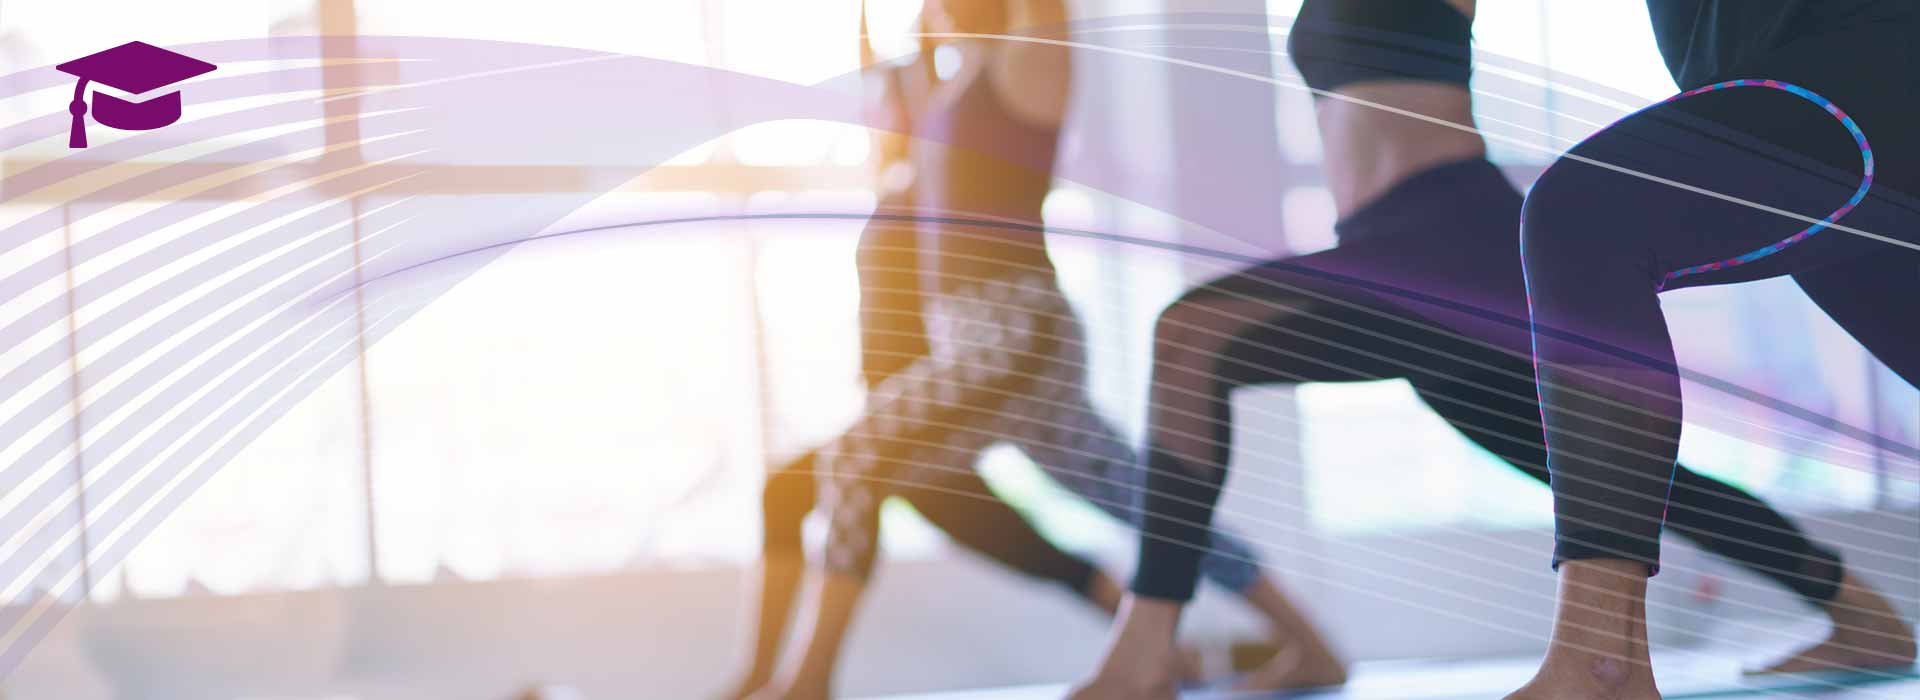 Eine Gruppe von Yogalehrenden trainieren in Sportdress mit Ausfallschritt und erhobenen Armen in einem großen Fitnesssaal, im Hintergrund eine lichtdurchflutete helle Fensterwand